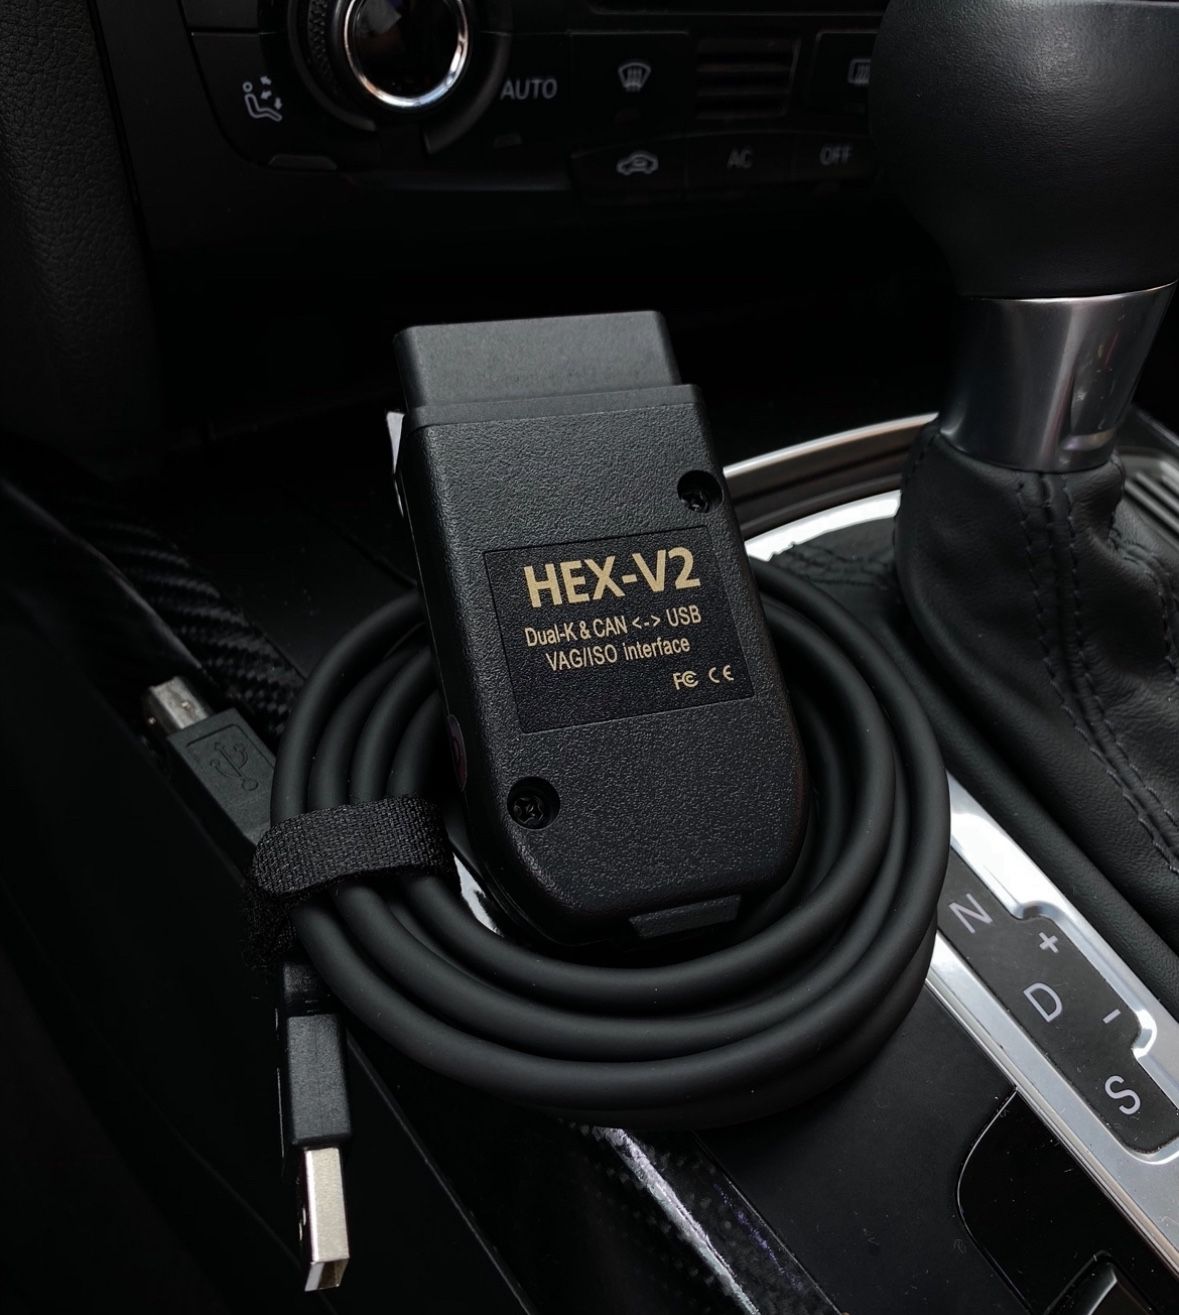 VCDS VAG COM CABLE AUDI VW DIAGNOSTICS CODING HEX V2 OBD11